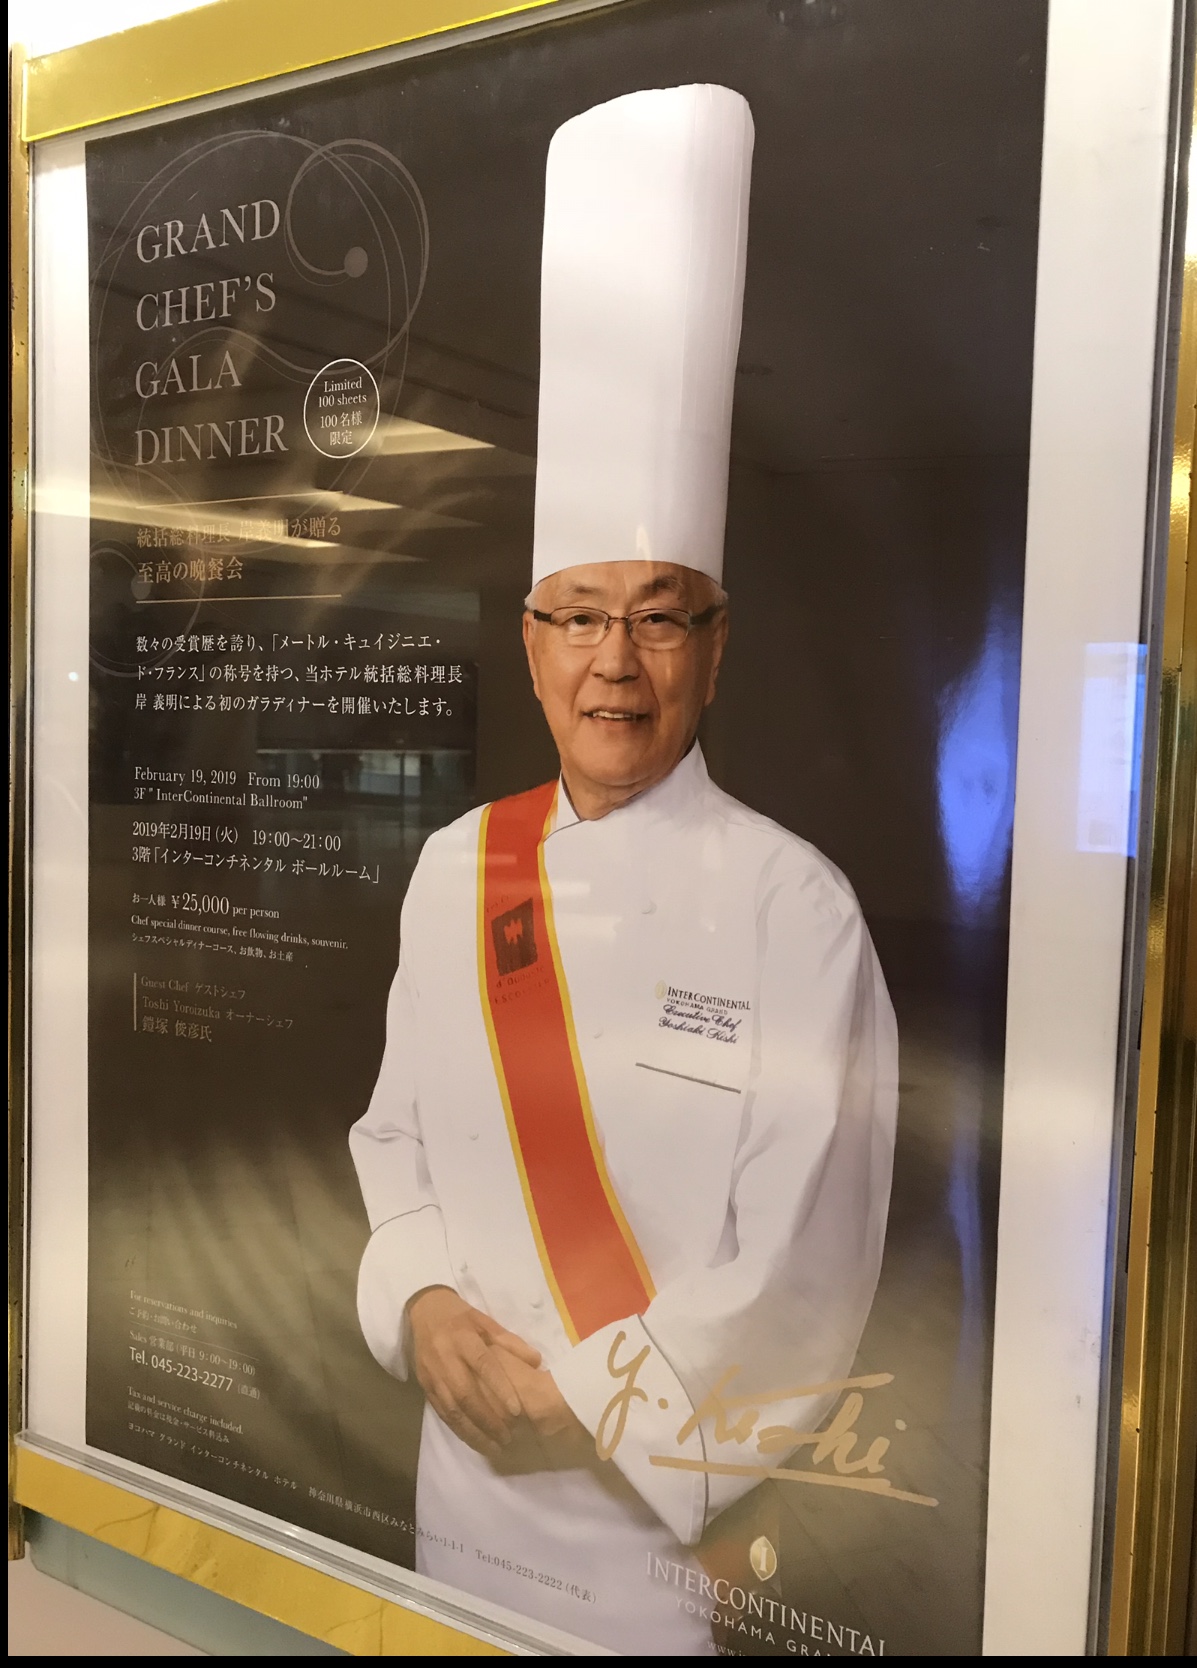 ホテルで開催される素敵フレンチのお知らせ 統括総料理長 岸義明氏が贈る 至高の晩餐会 2月19日に開催 スタリス横浜